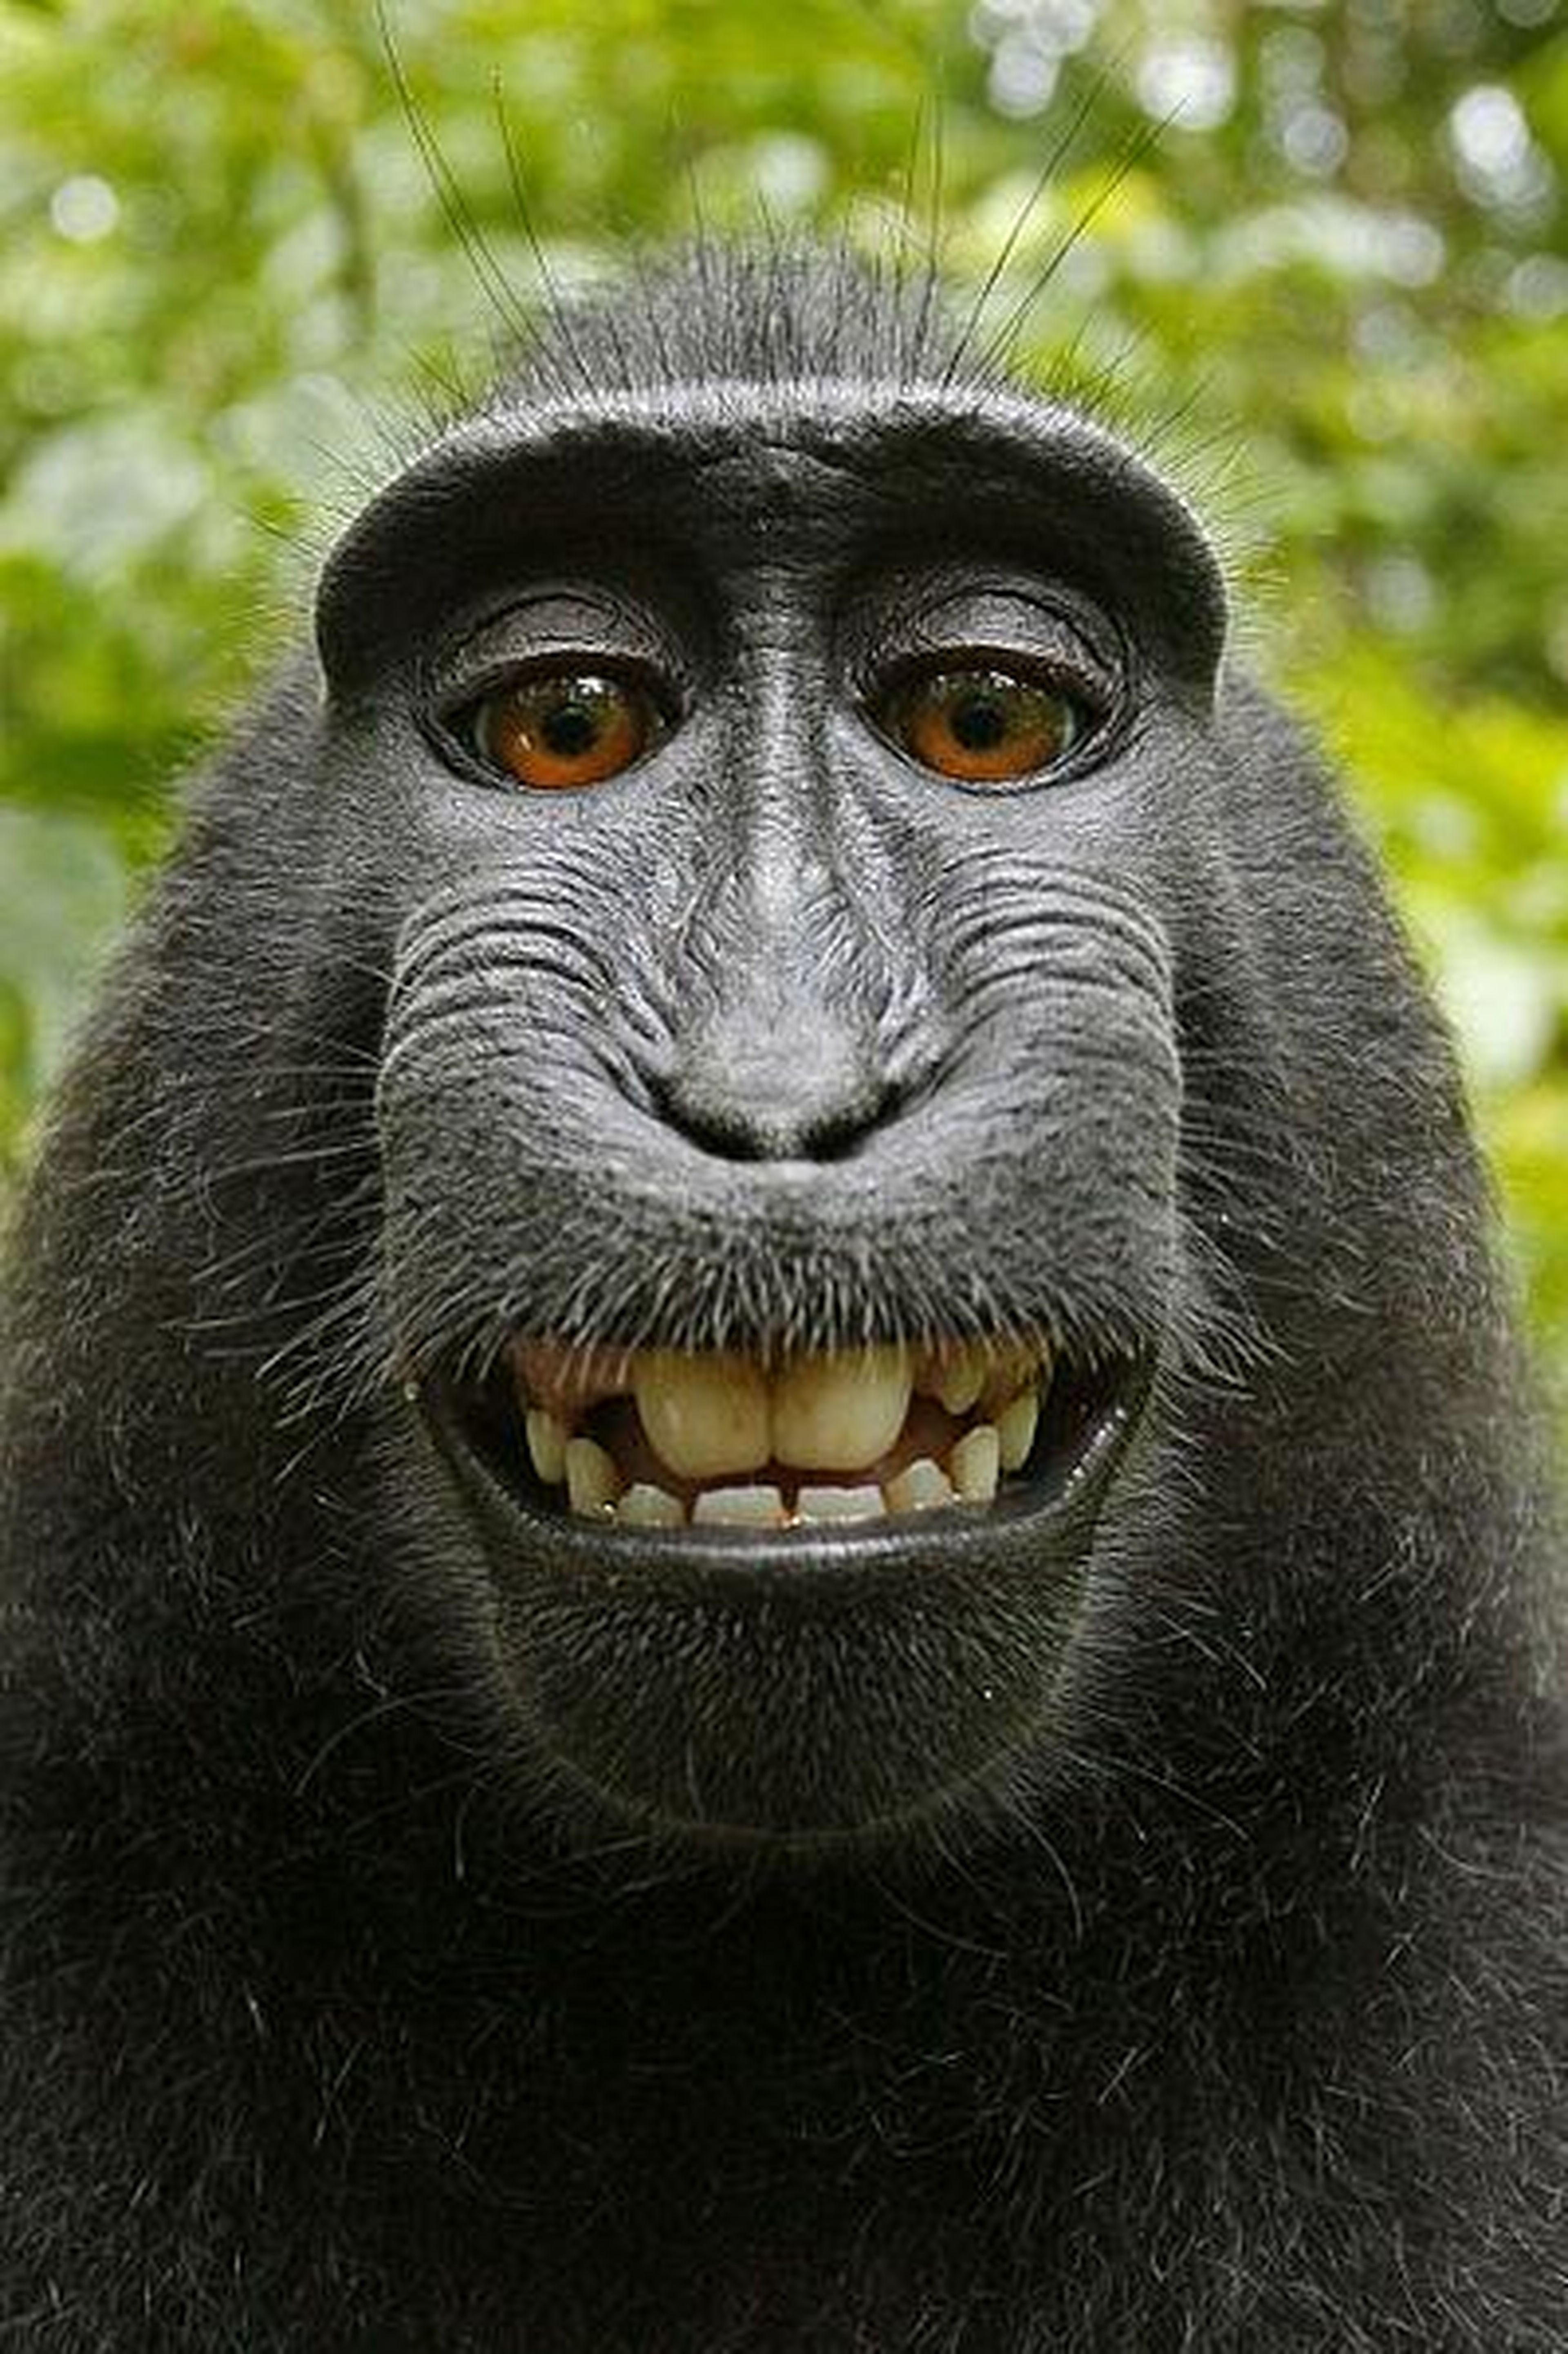 Una de las selfies de Naruto, el mono que cogió la cámara del fotógrafo David Slater.